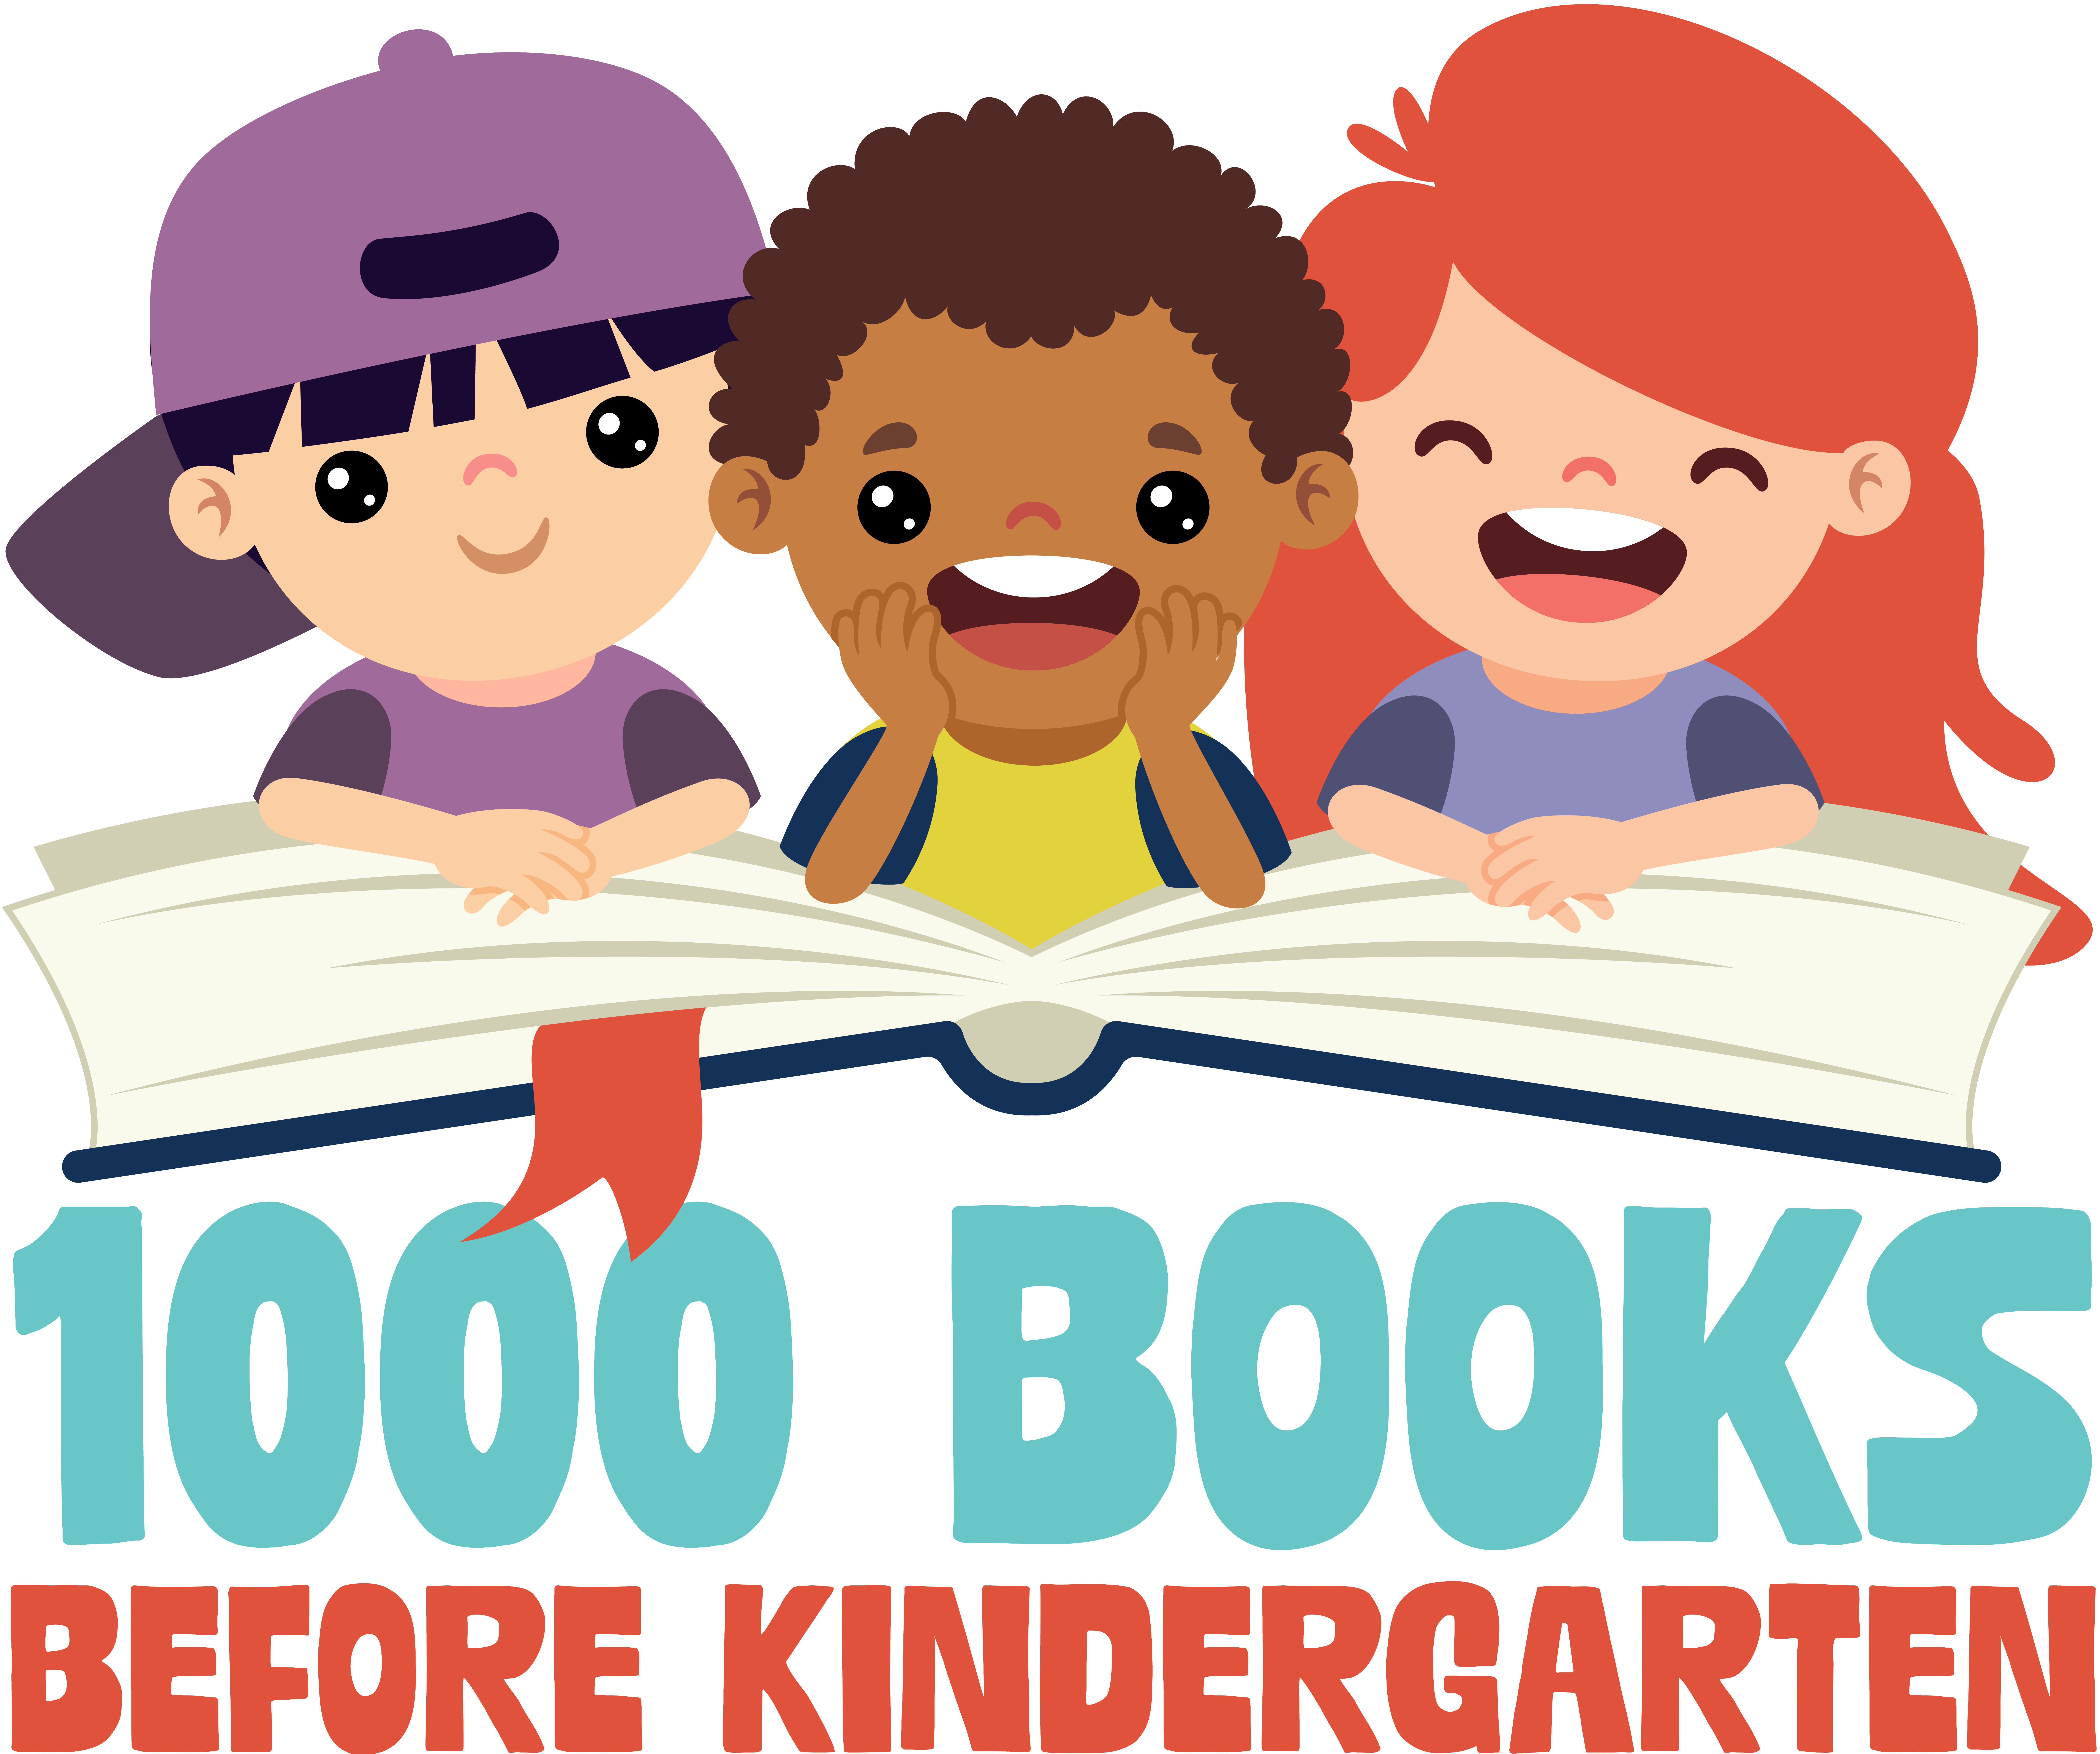 1000 Books Before Kindergarten logo for Vigo County Public Library